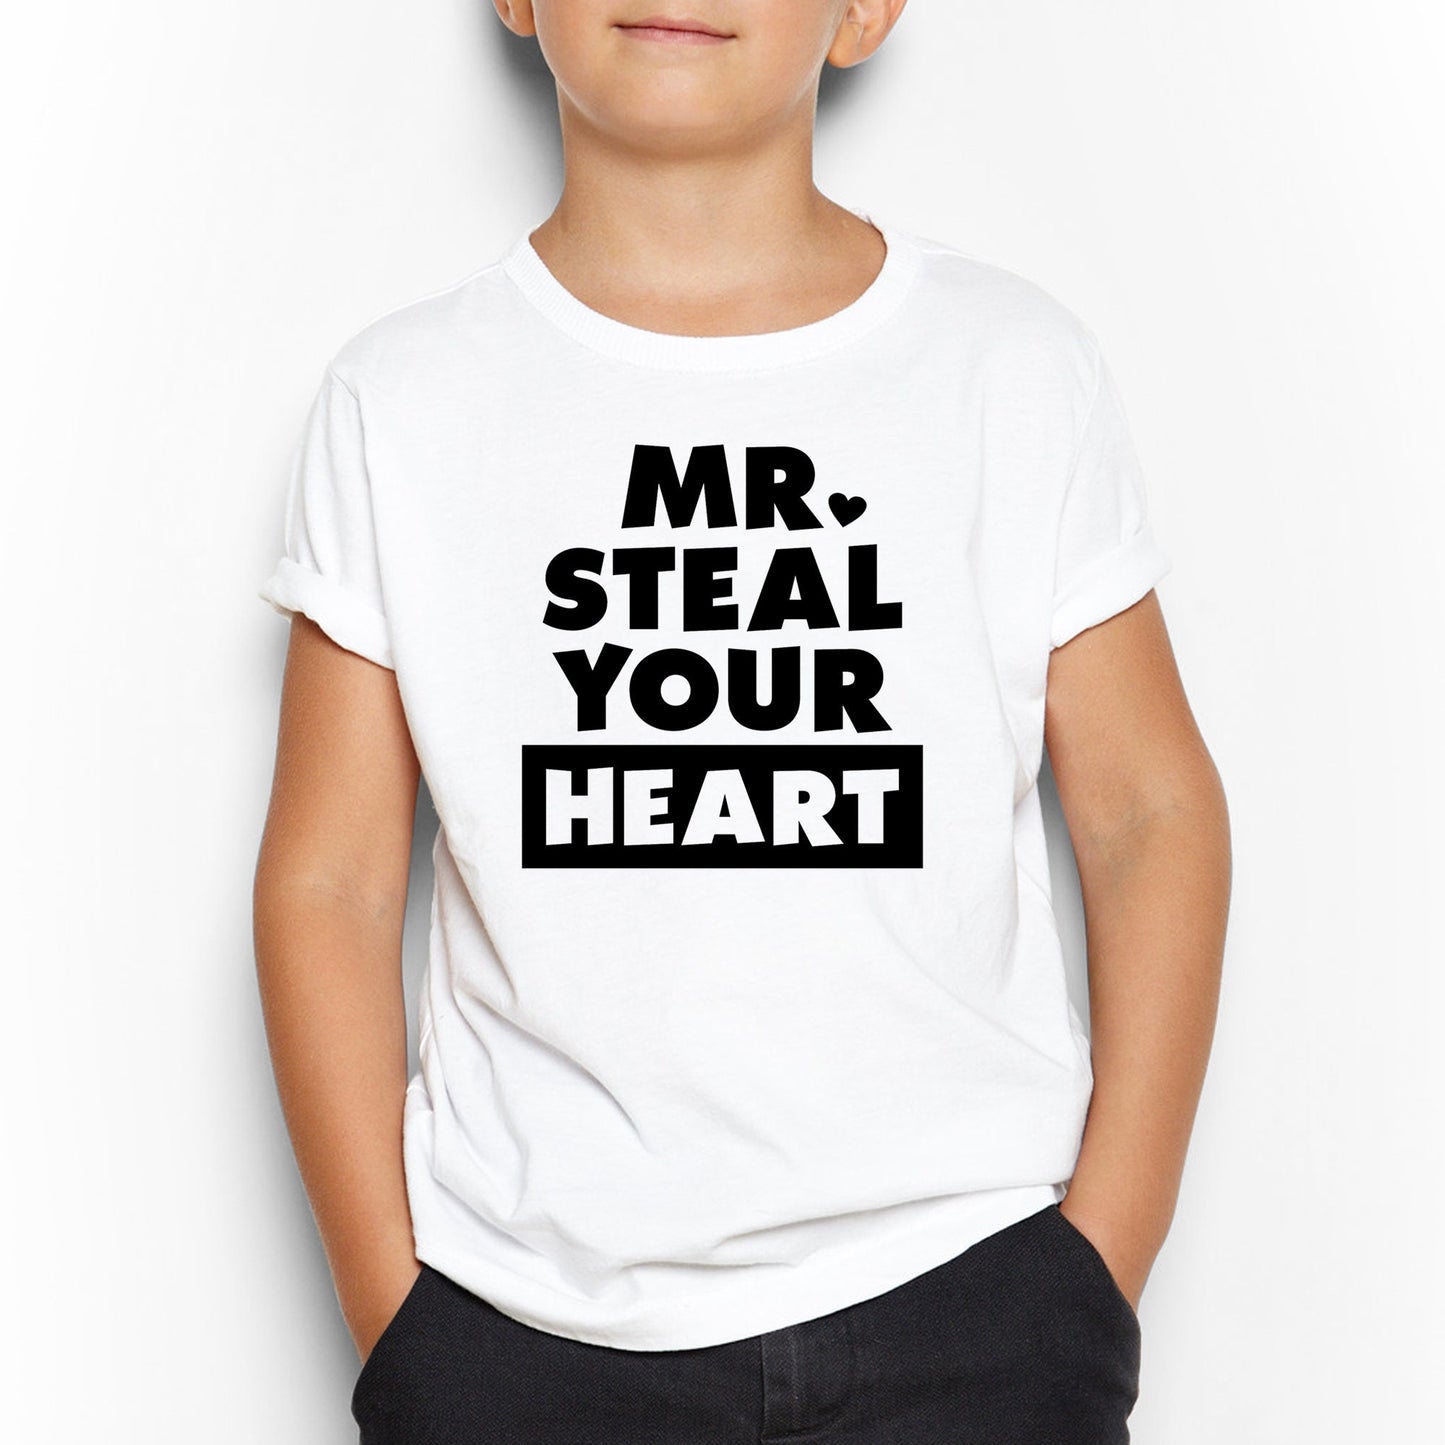 Mr Steal Your Heart, Kids Shirt, Children Shirt, Youth Shirt, Toddler Shirt, Kids Shirts, Children Shirts